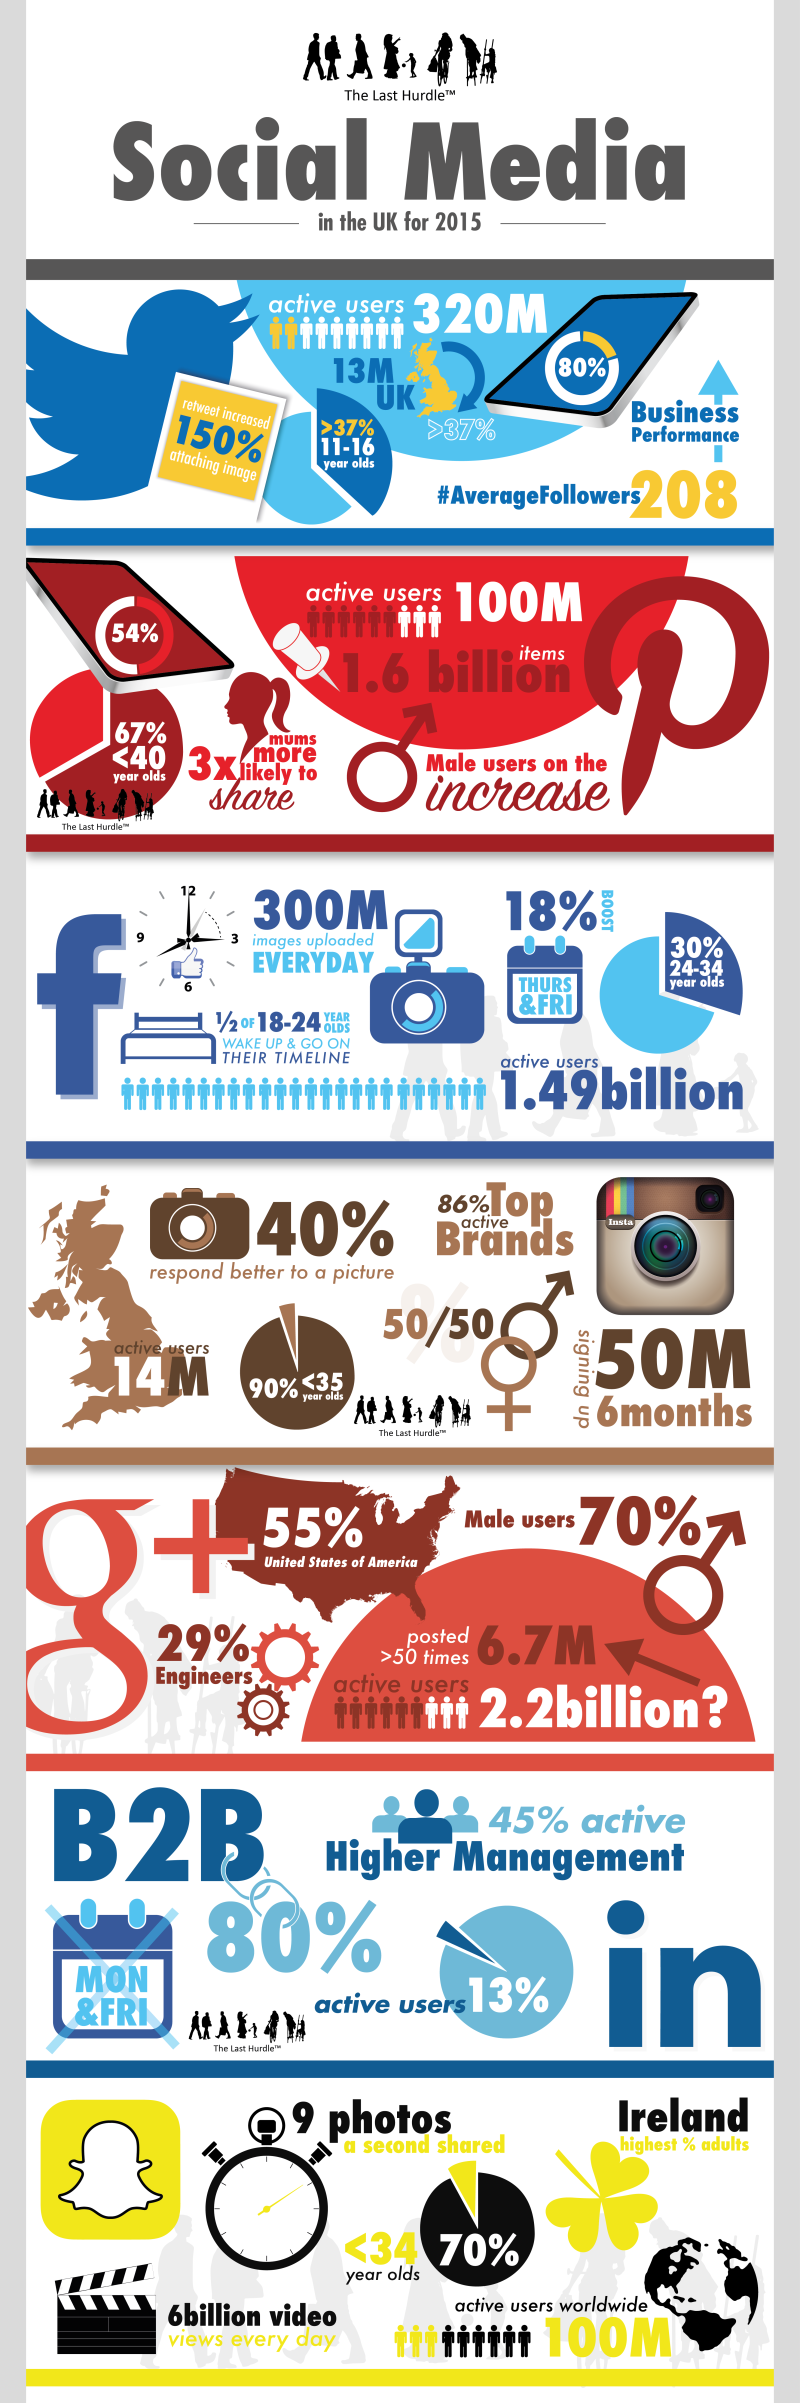 Social Media User Statistics in the UK